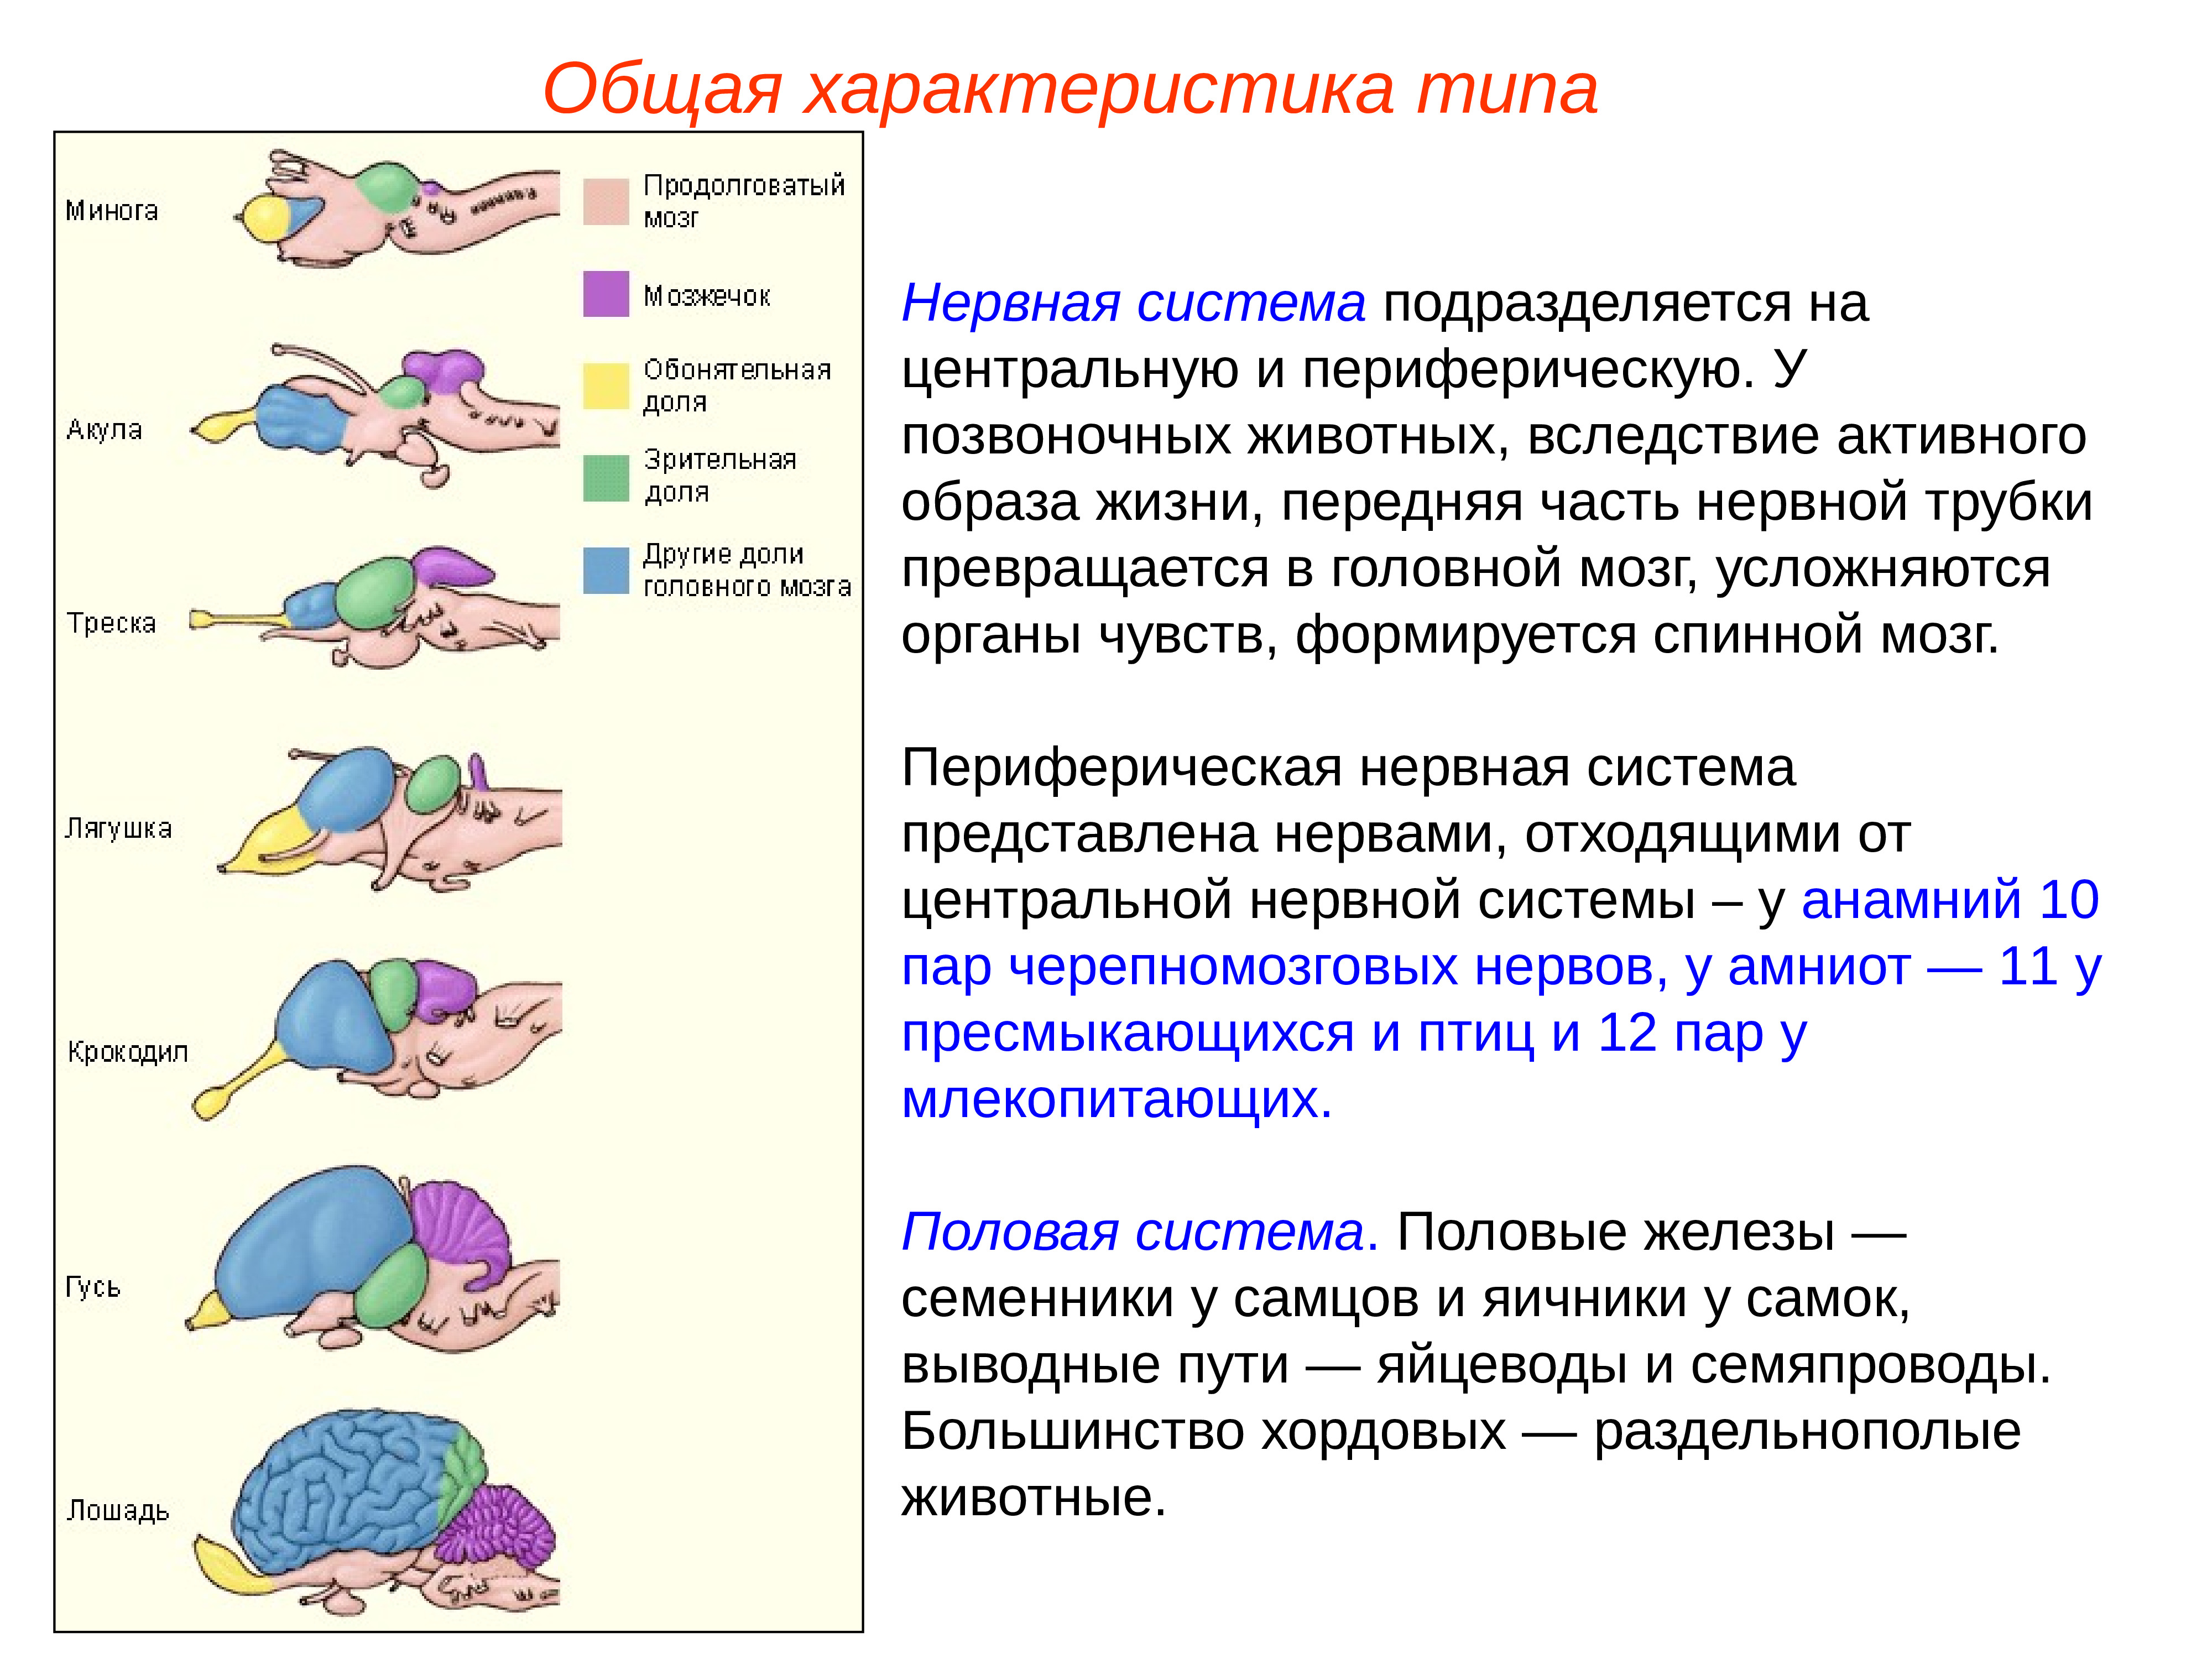 Нервная система животных головной мозг позвоночных